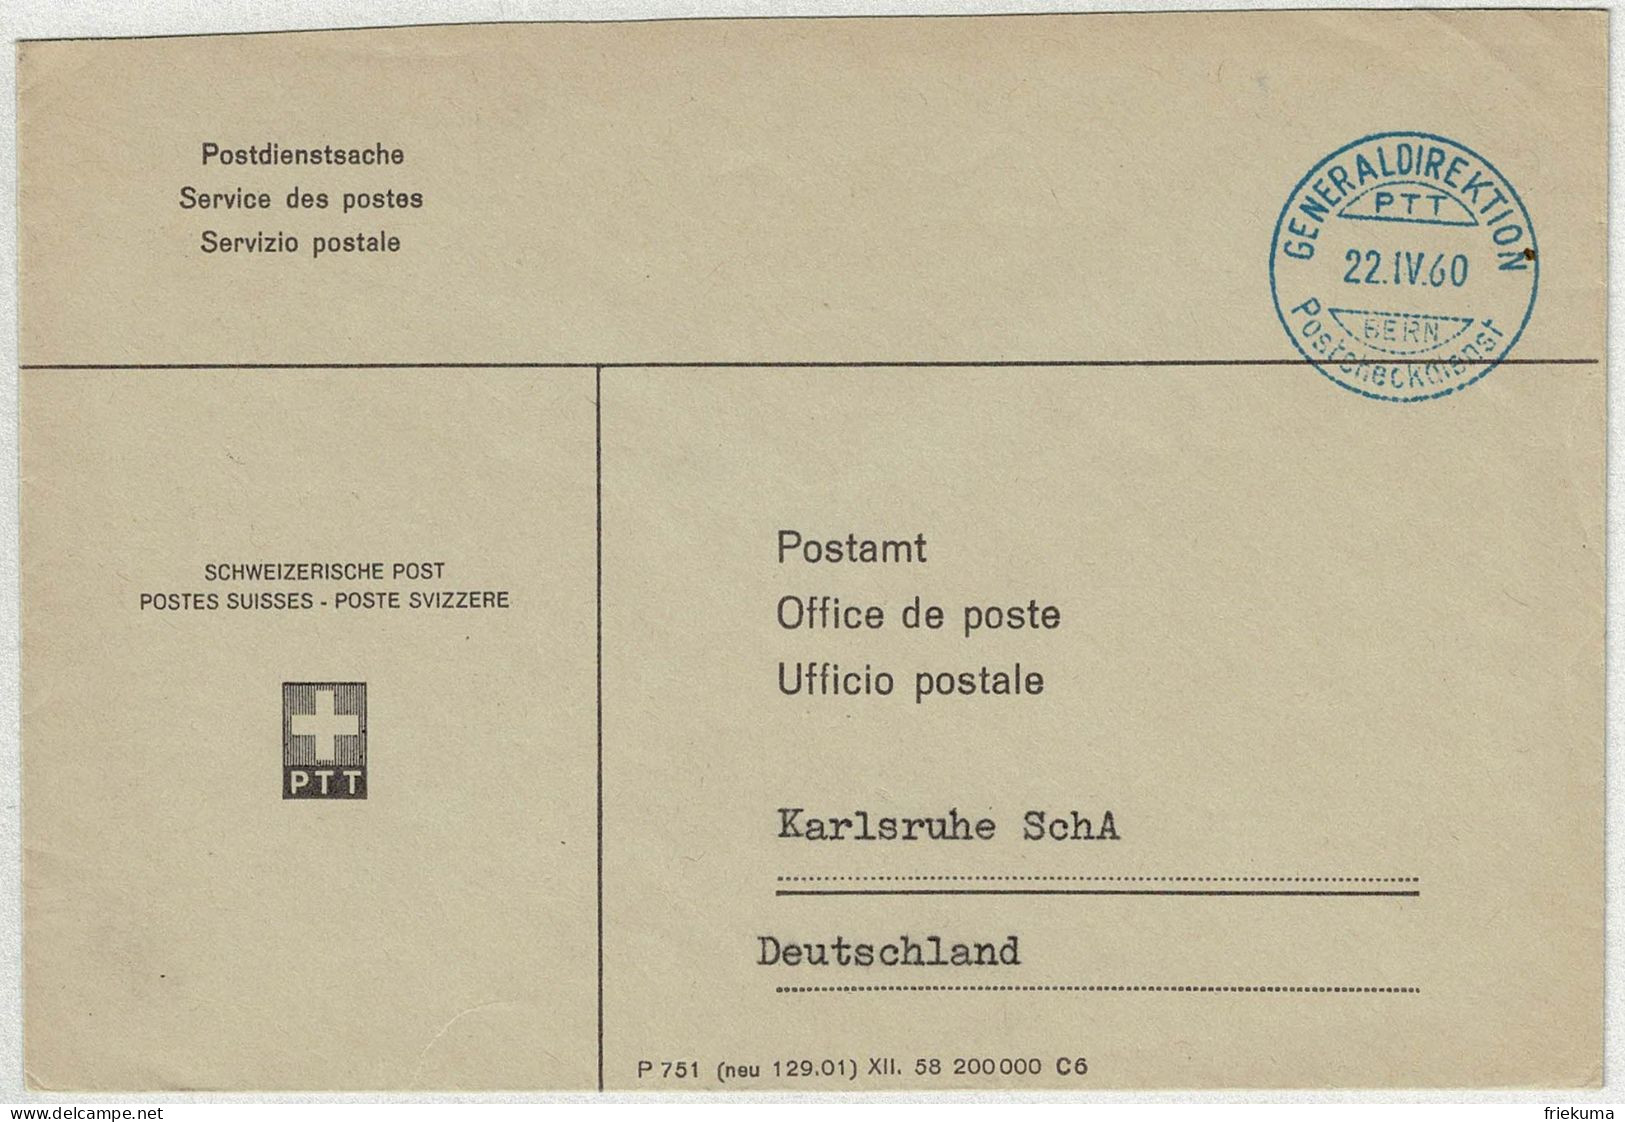 Schweiz 1960, Postdienstsache Generaldirektion PTT Postcheckdienst Bern - Karlsruhe - Poststempel